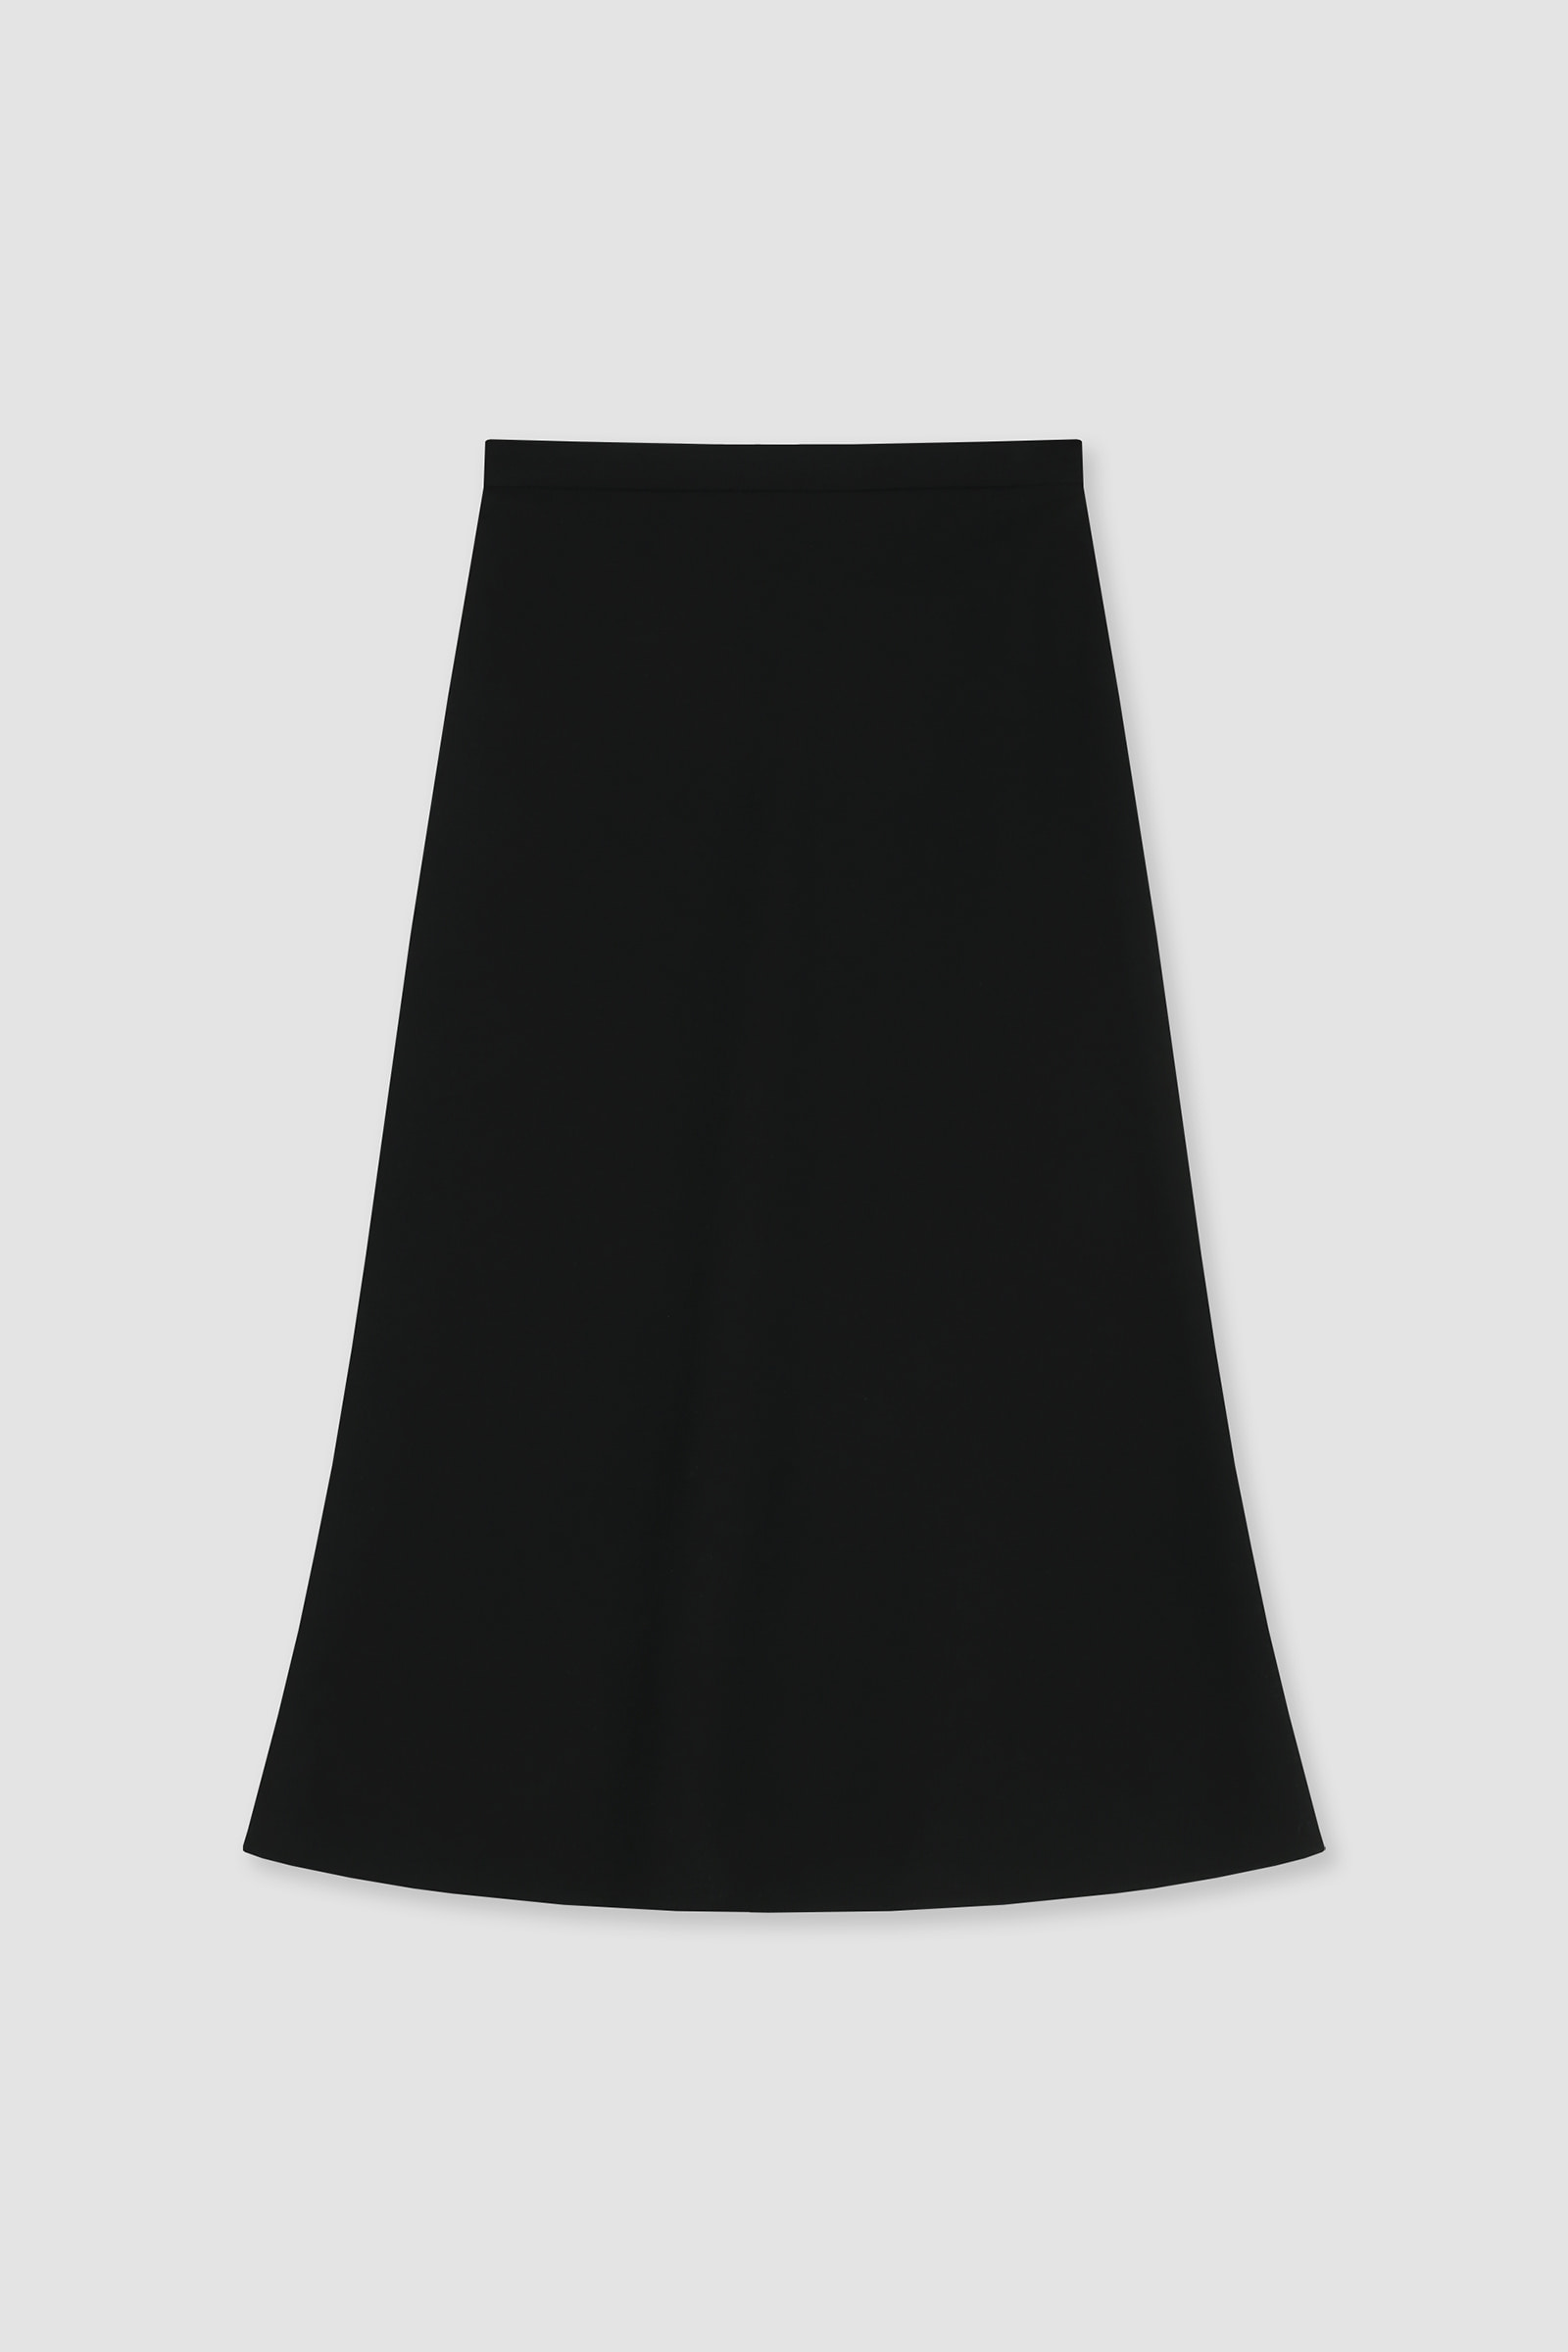 Runa Skirt